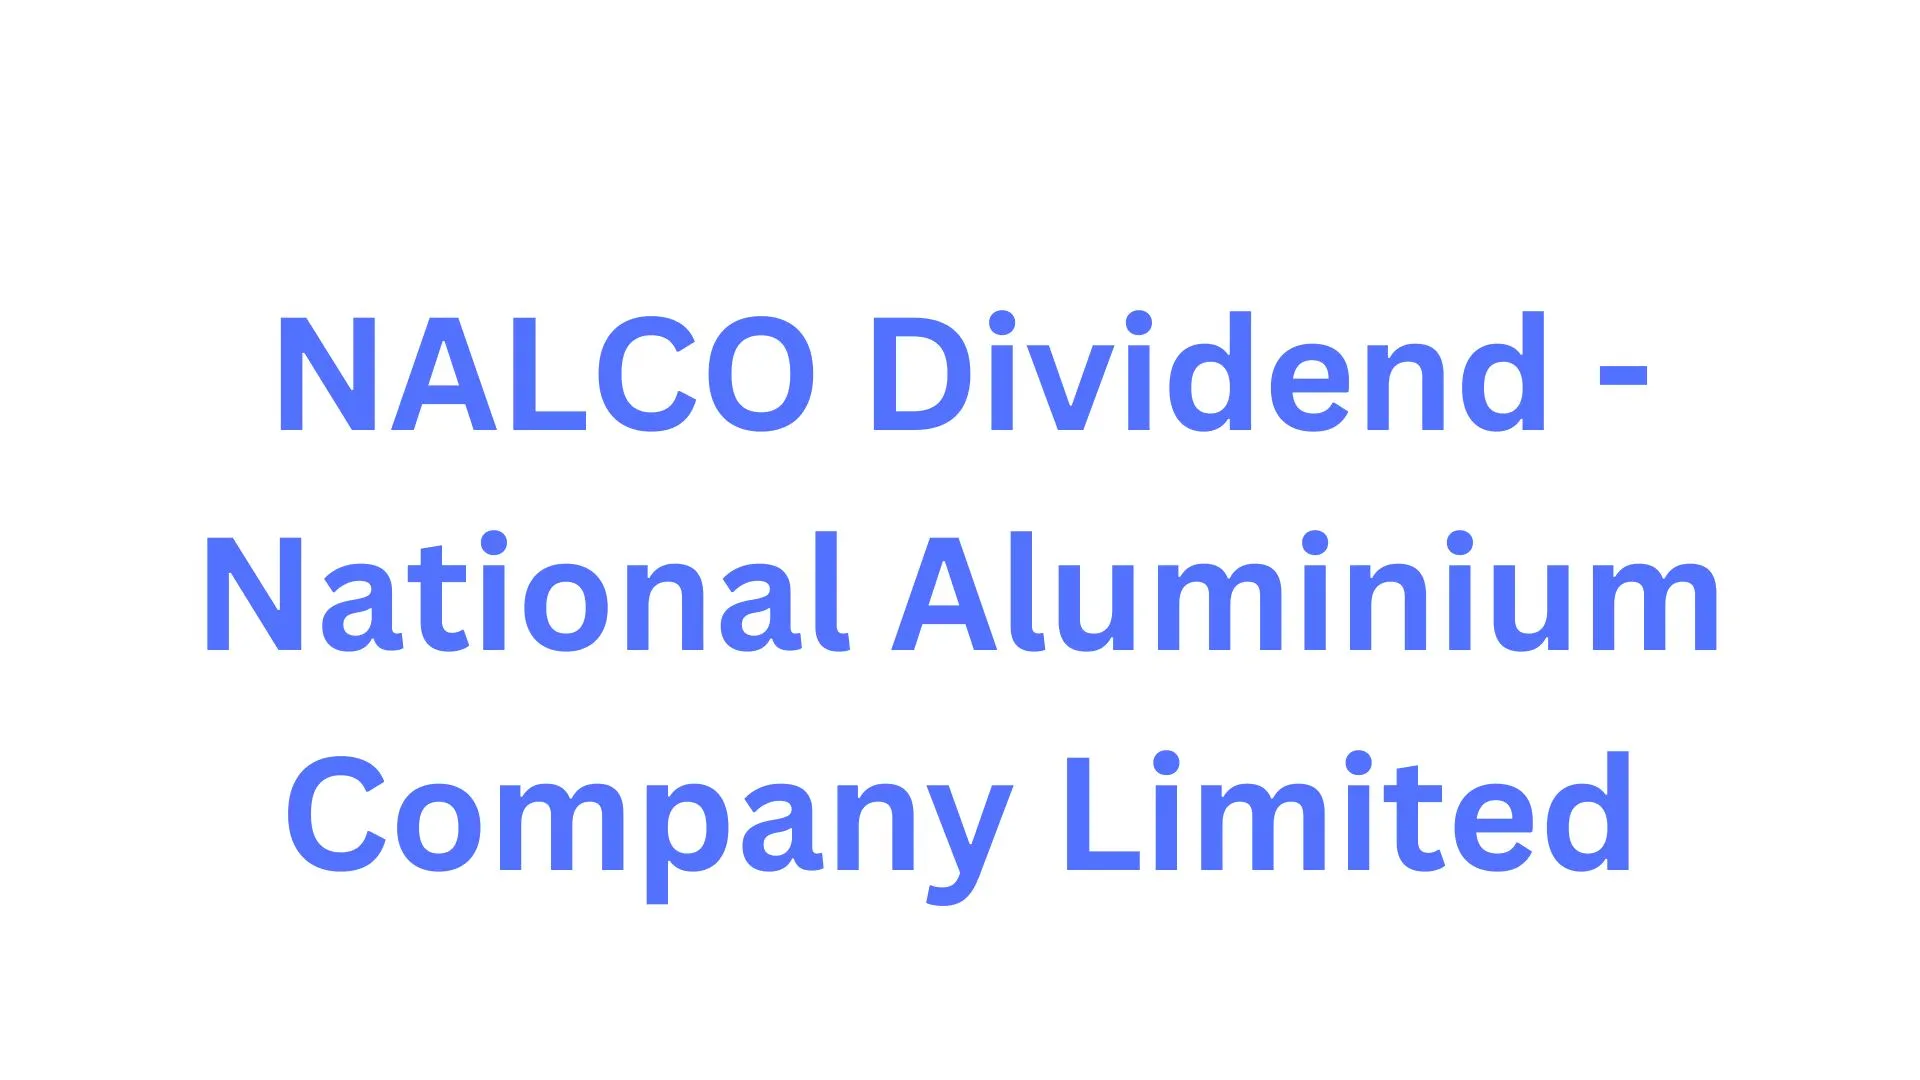 NALCO Dividend